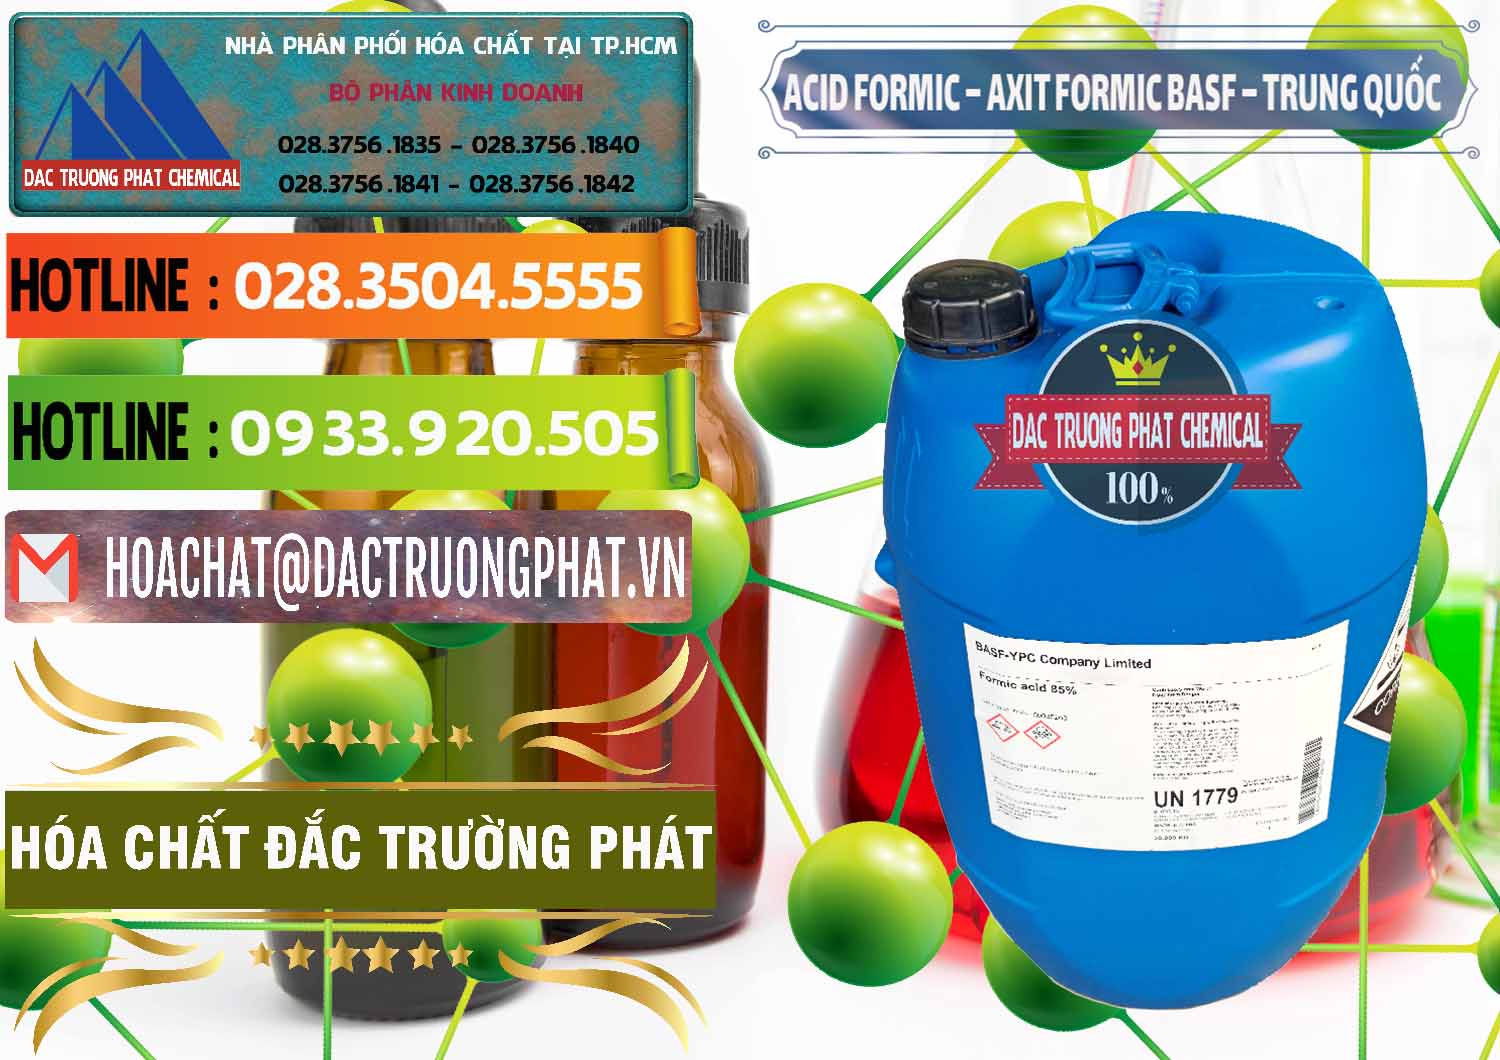 Nơi chuyên cung ứng - bán Acid Formic - Axit Formic BASF Trung Quốc China - 0025 - Công ty kinh doanh và phân phối hóa chất tại TP.HCM - cungcaphoachat.com.vn